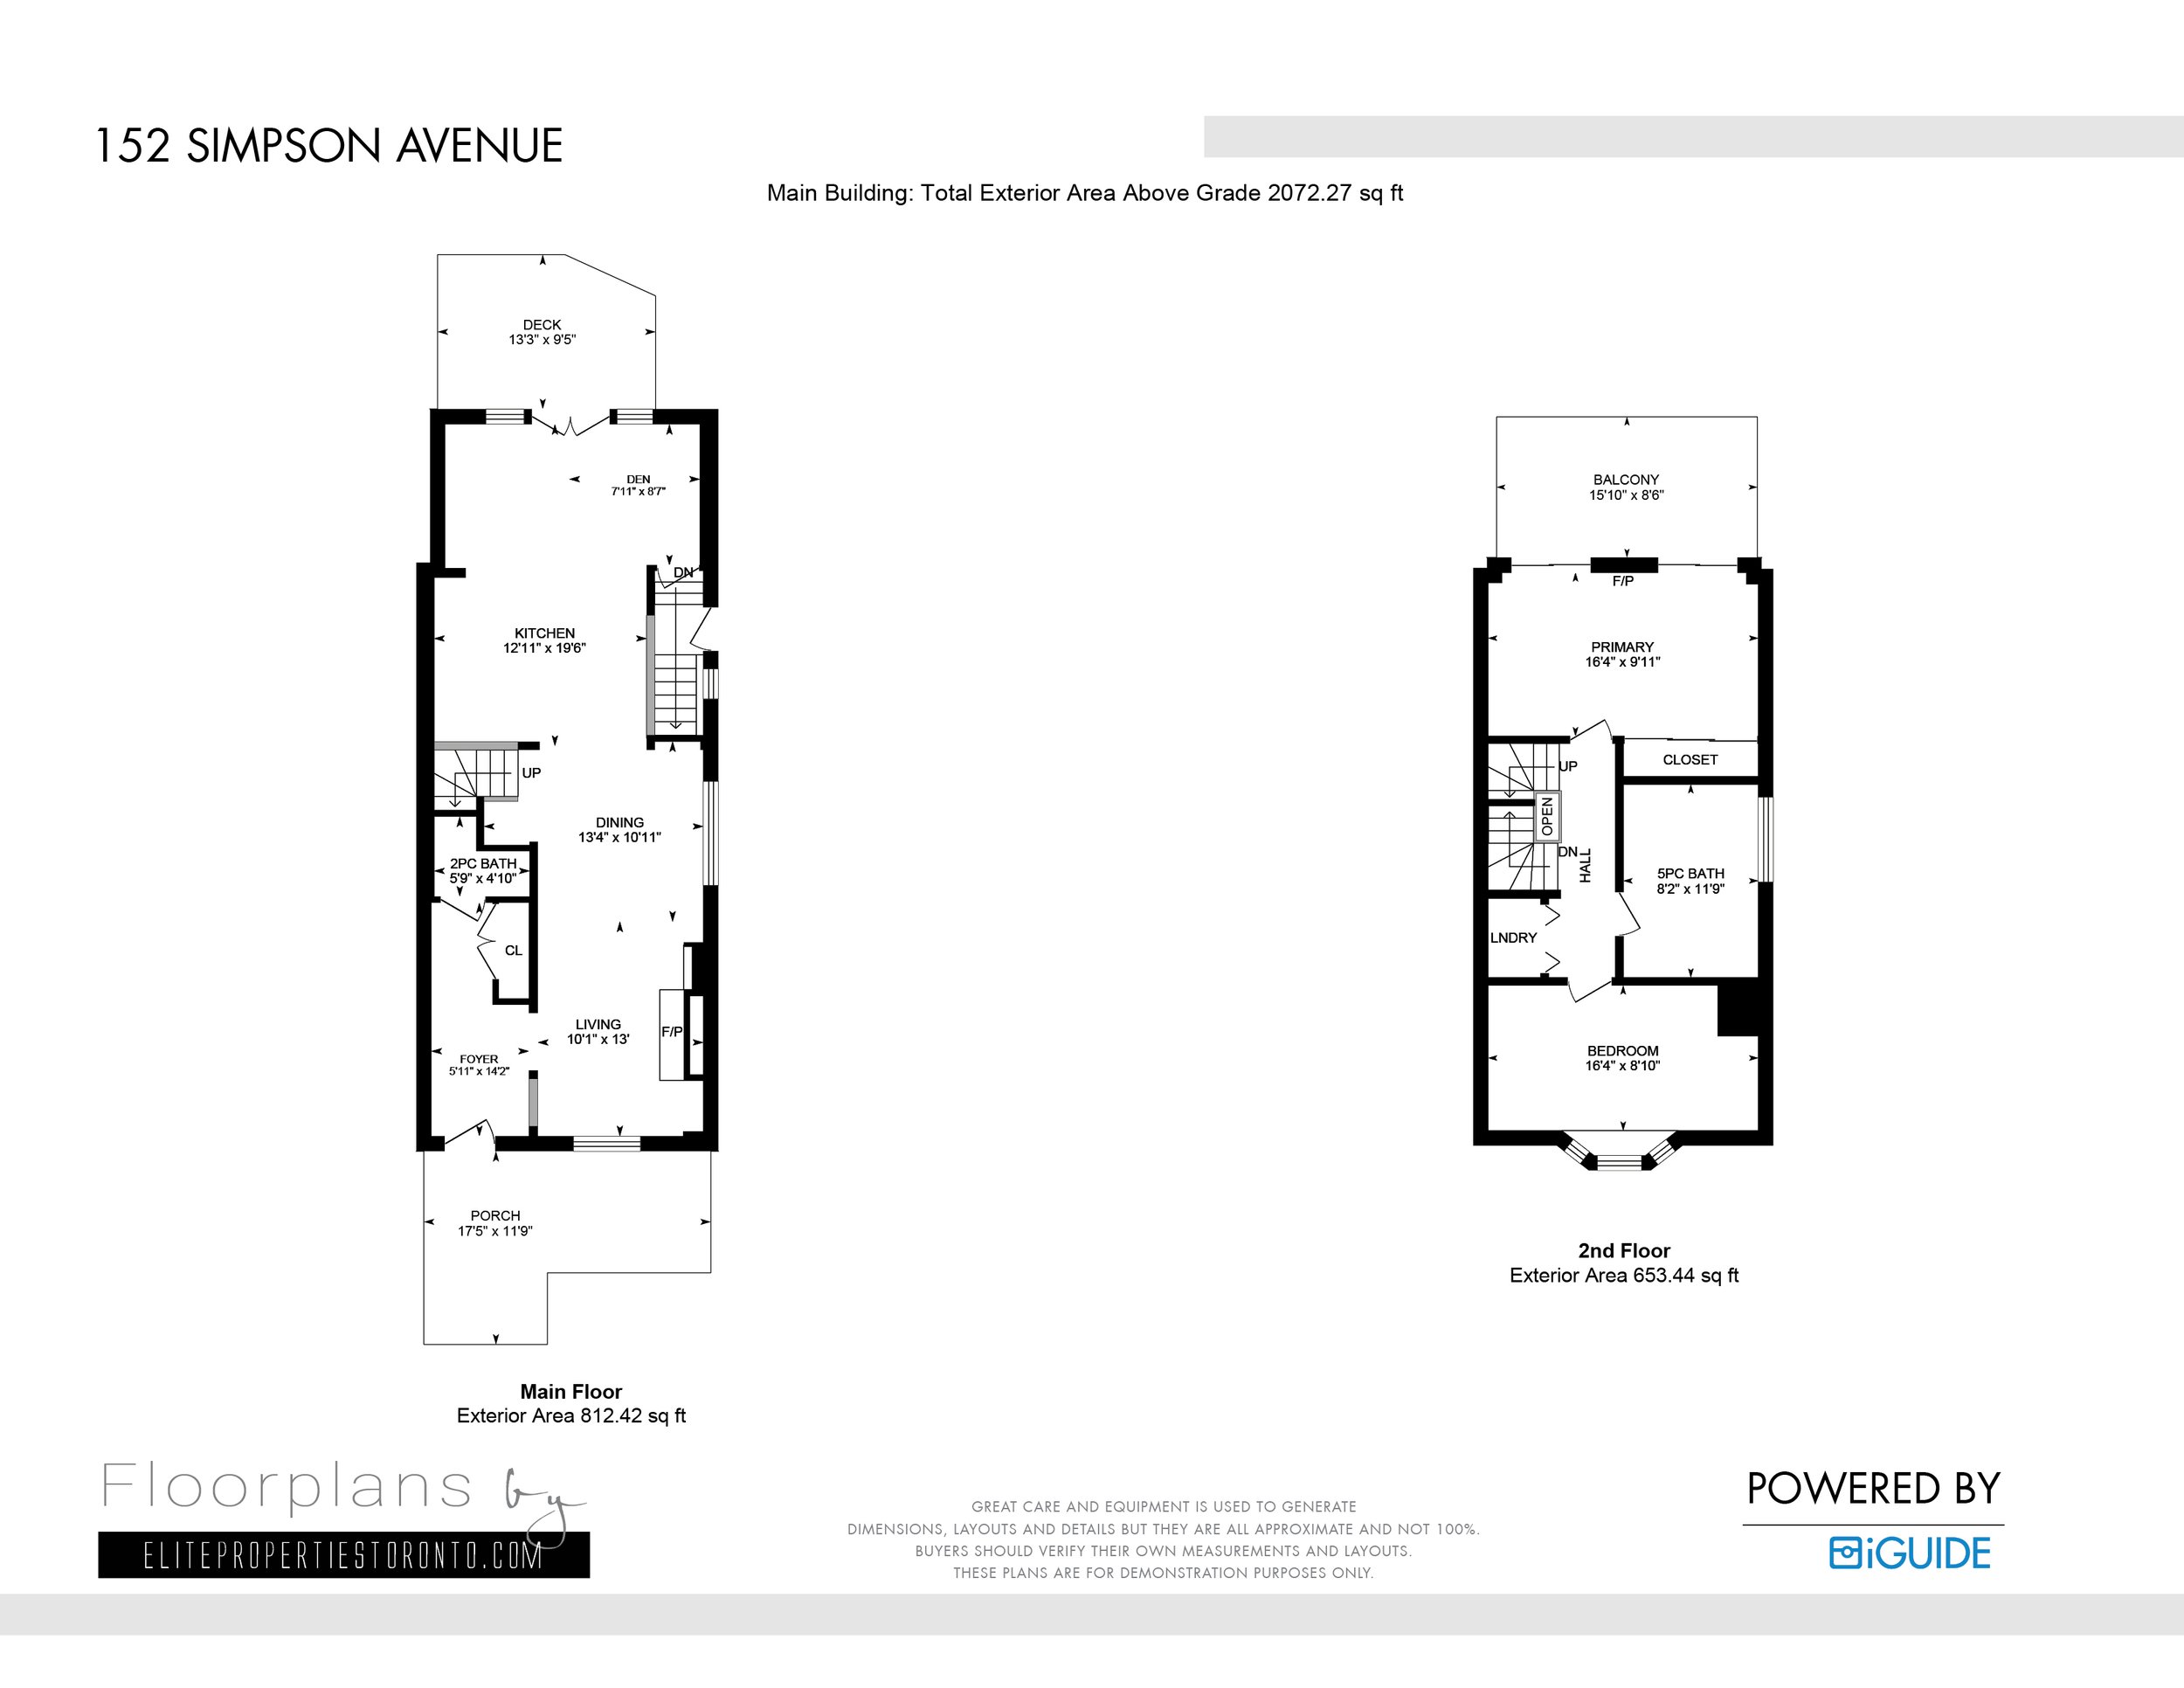 UPLOAD Floor plans By Elite Properties 152 Simpson Avenue.jpg